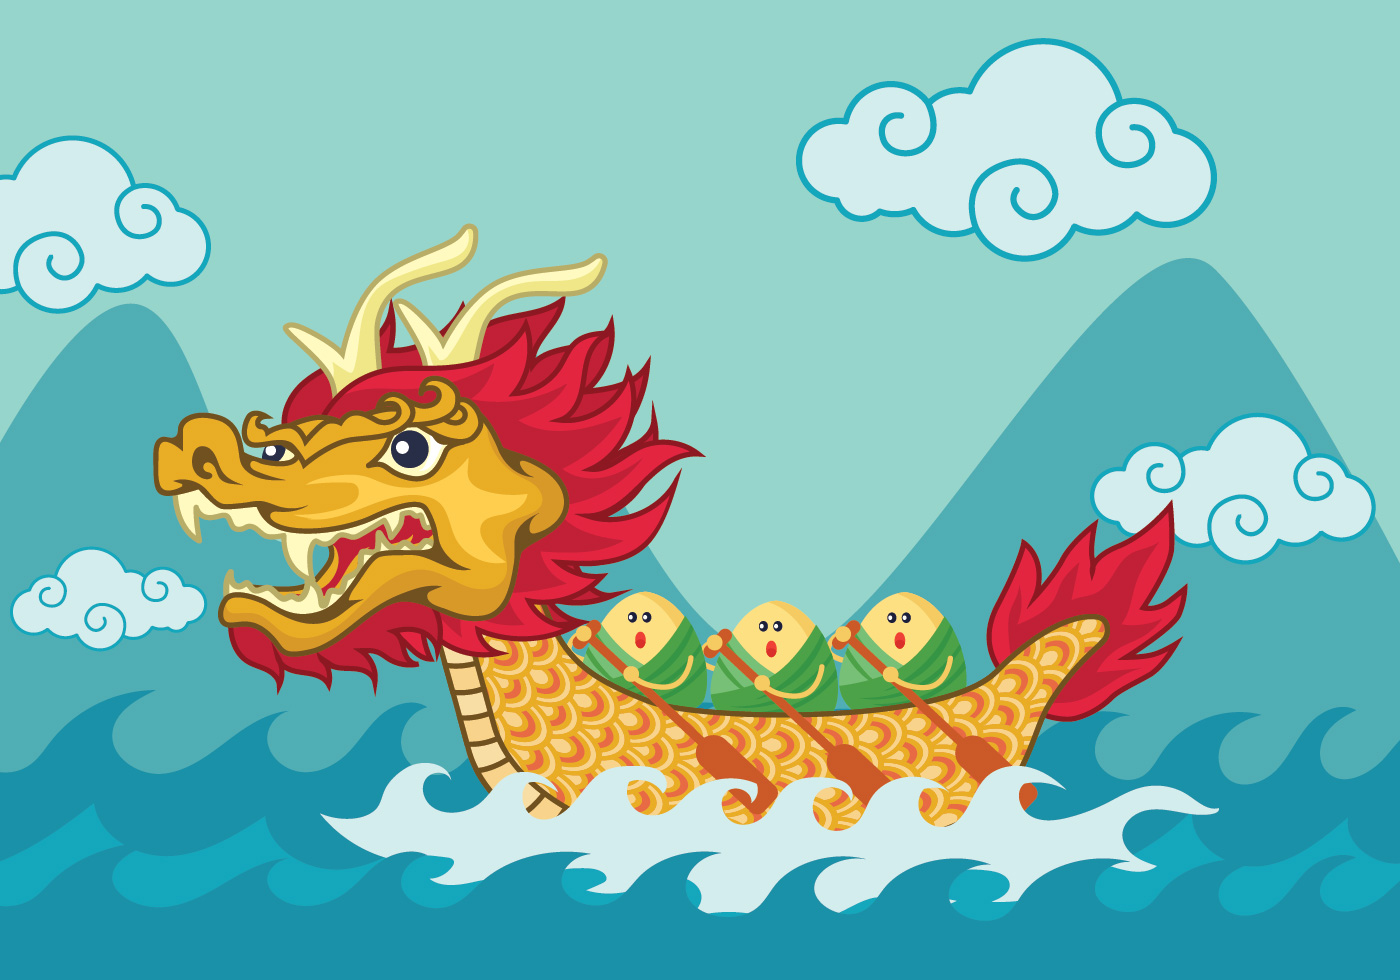 dragon boat festival - download free vectors, clipart